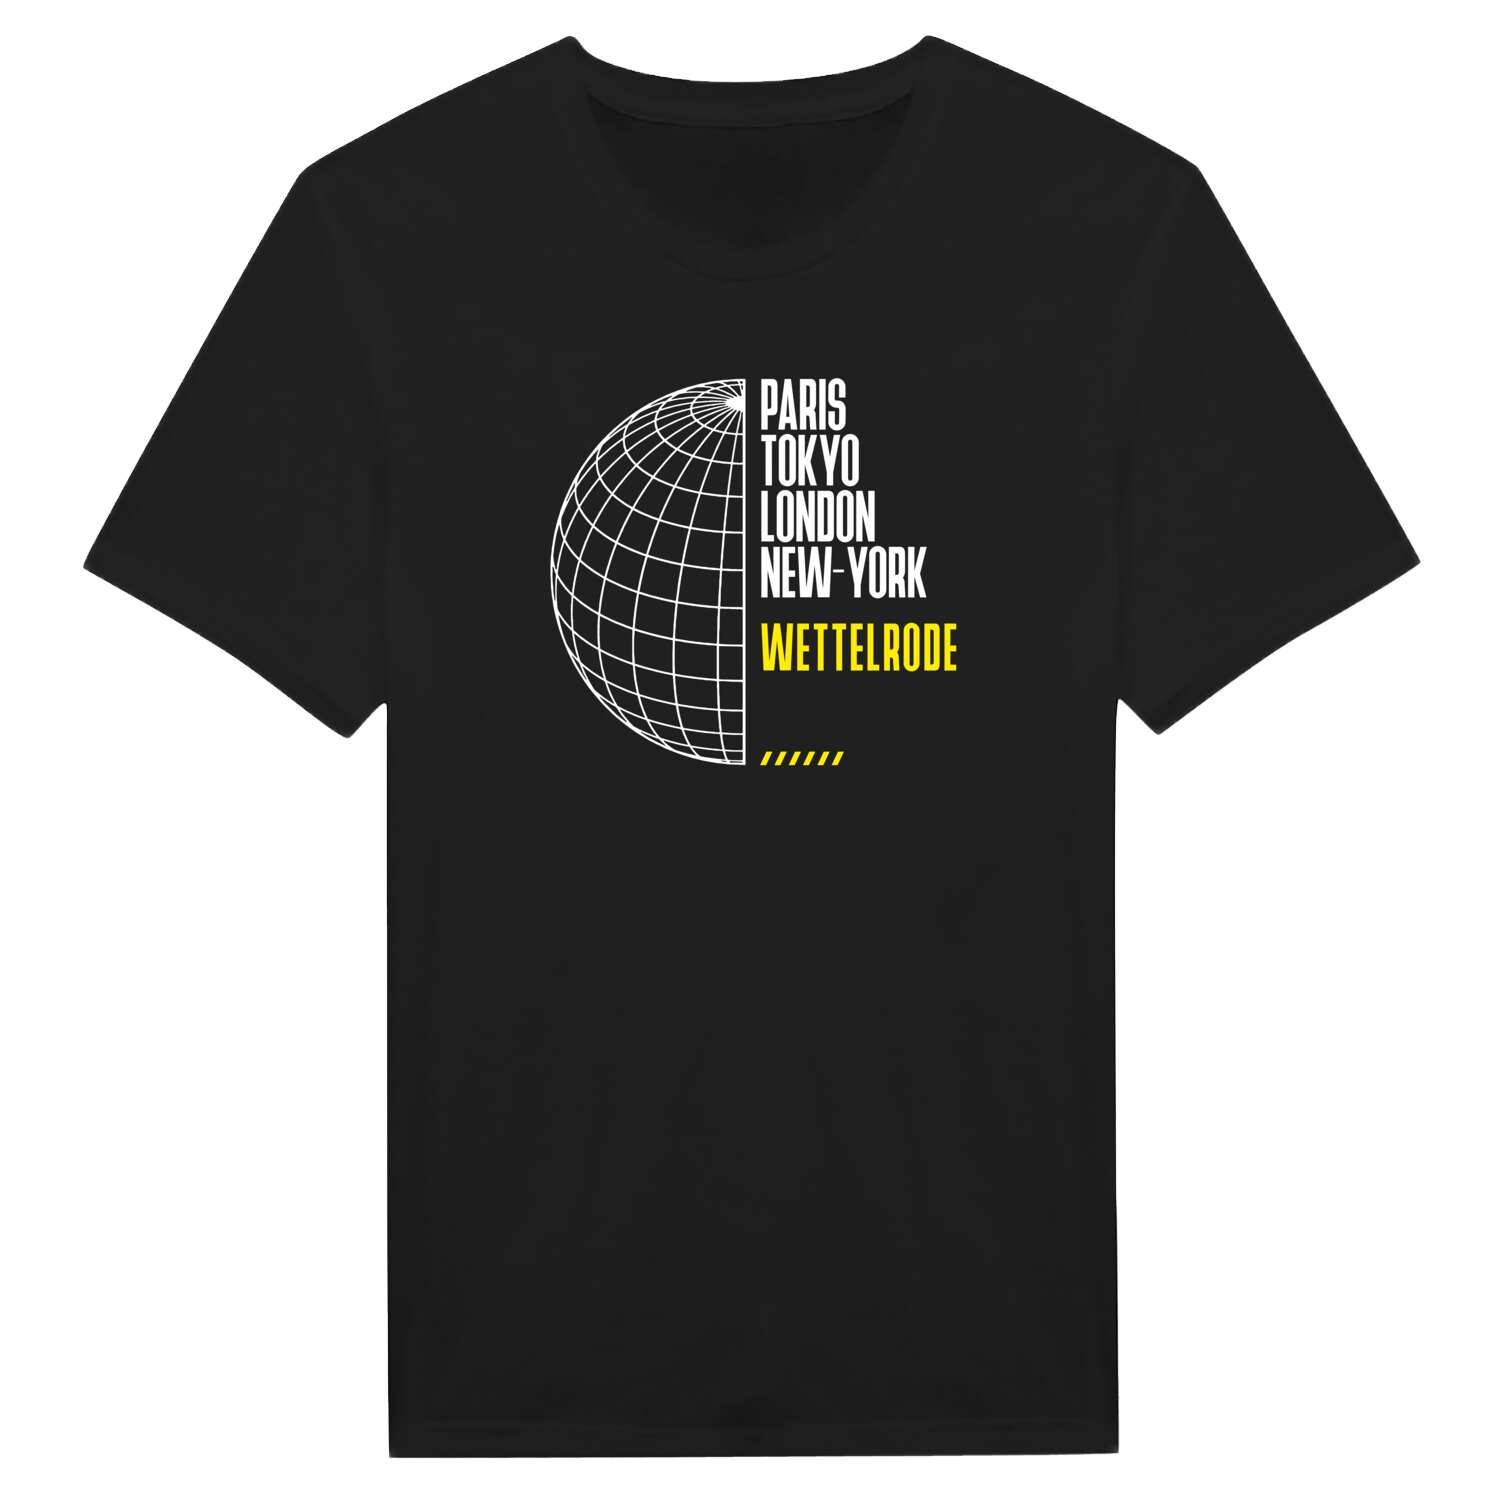 Wettelrode T-Shirt »Paris Tokyo London«